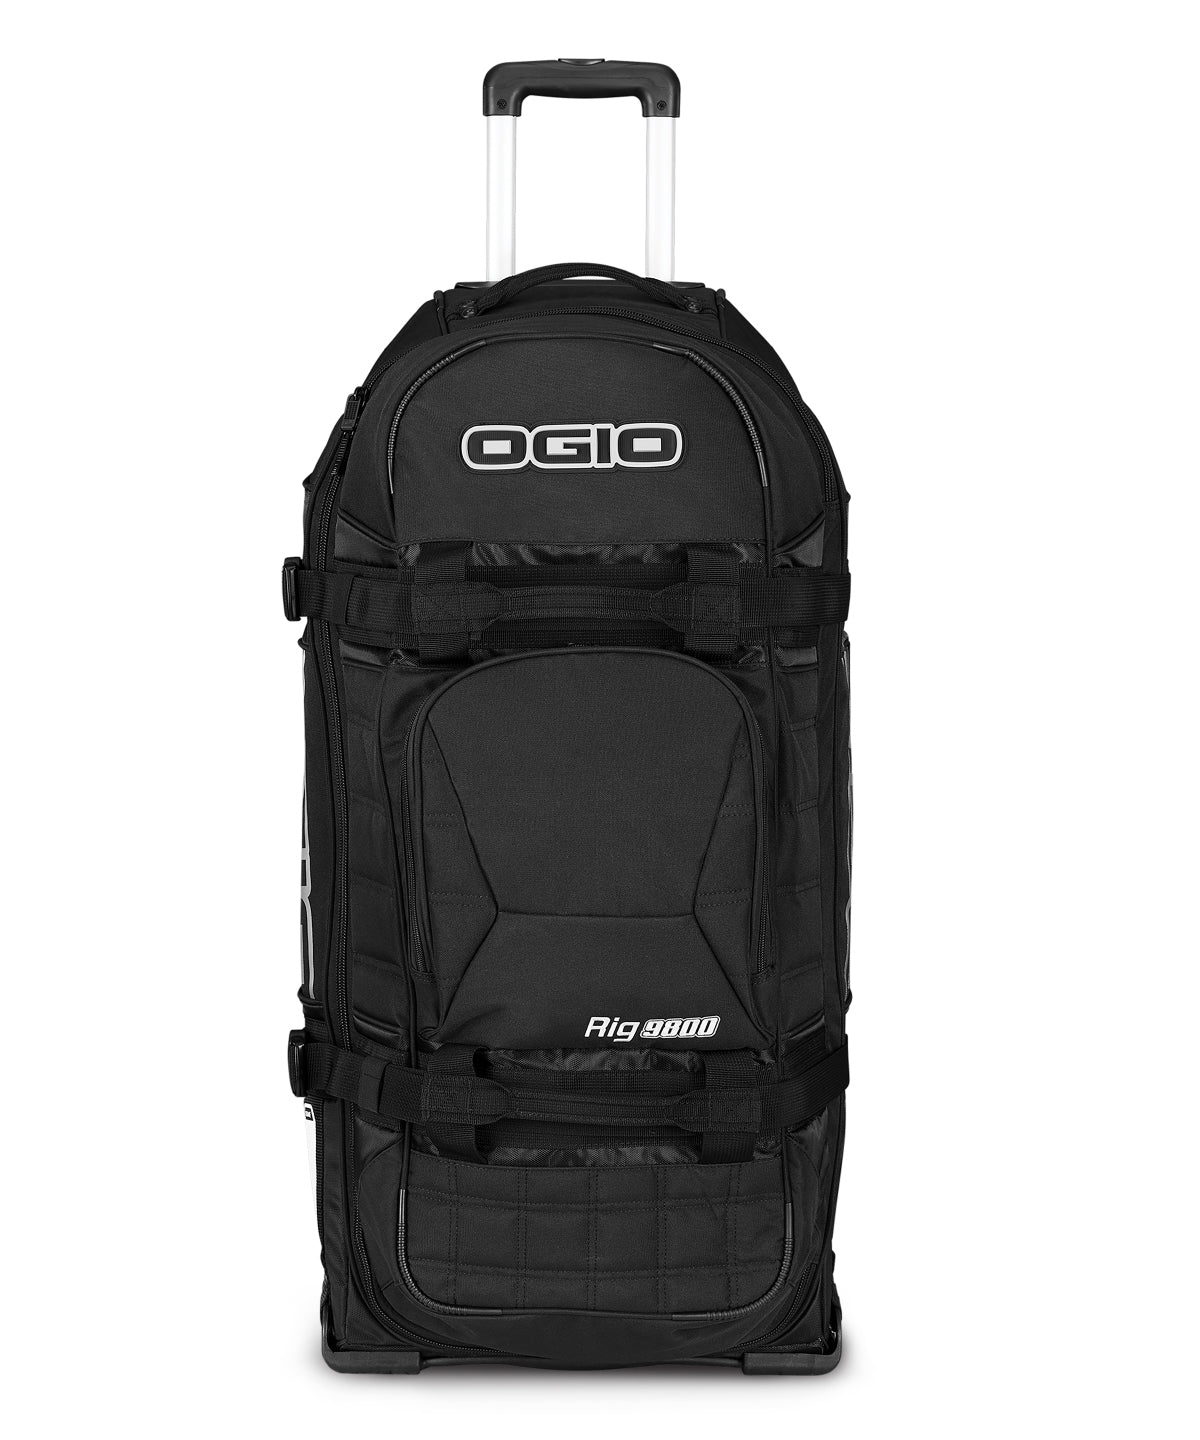 Töskur - Rig 9800 Gear And Travel Bag